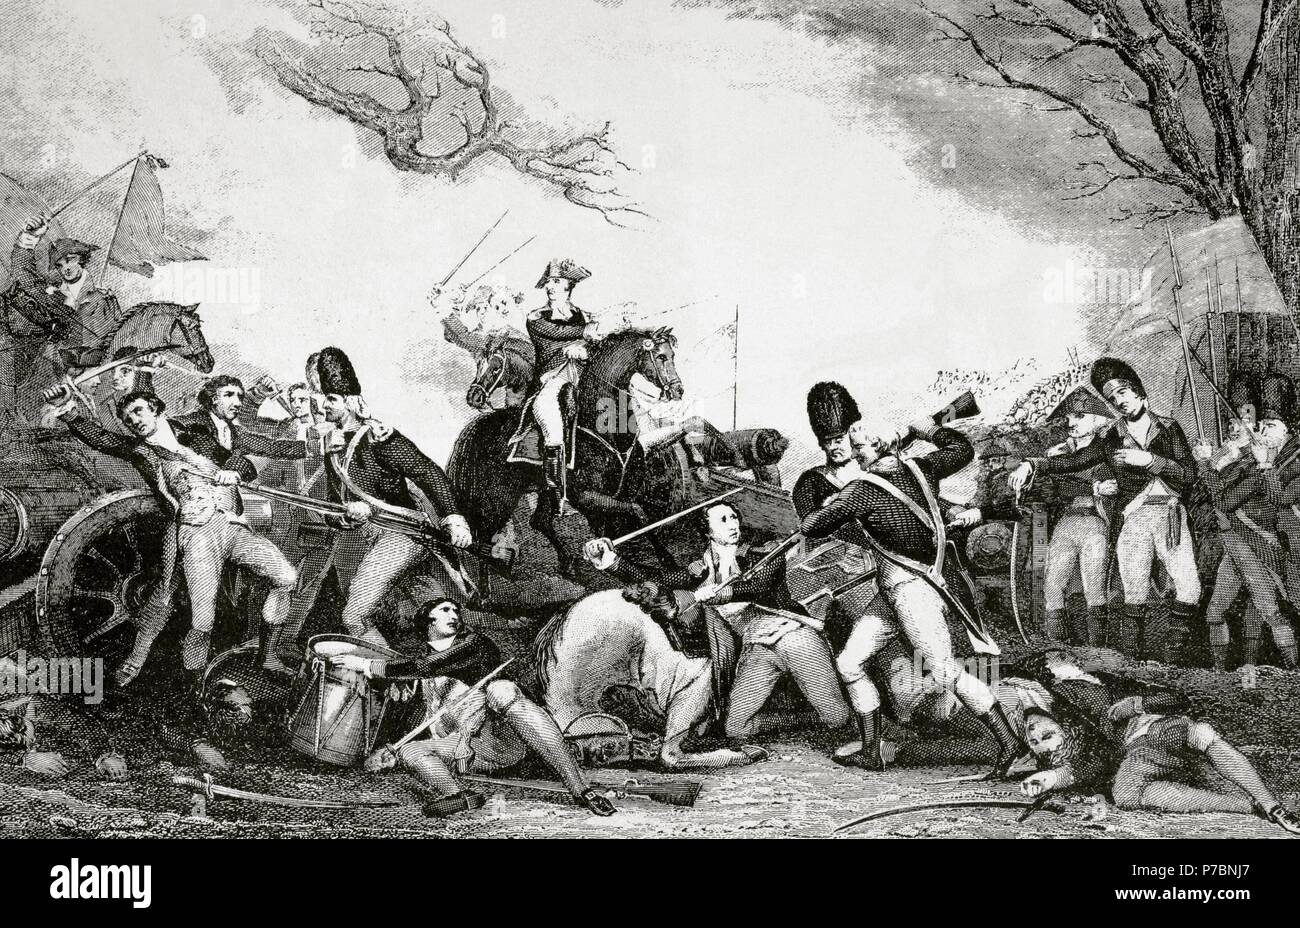 La guerra rivoluzionaria americana (1775-1783). La battaglia di Princeton (3 gennaio 1777). Il generale George Washington forze rivoluzionarie sconfitto le forze britanniche nei pressi di Princeton, New Jersey. Incisione. Xix secolo. Foto Stock